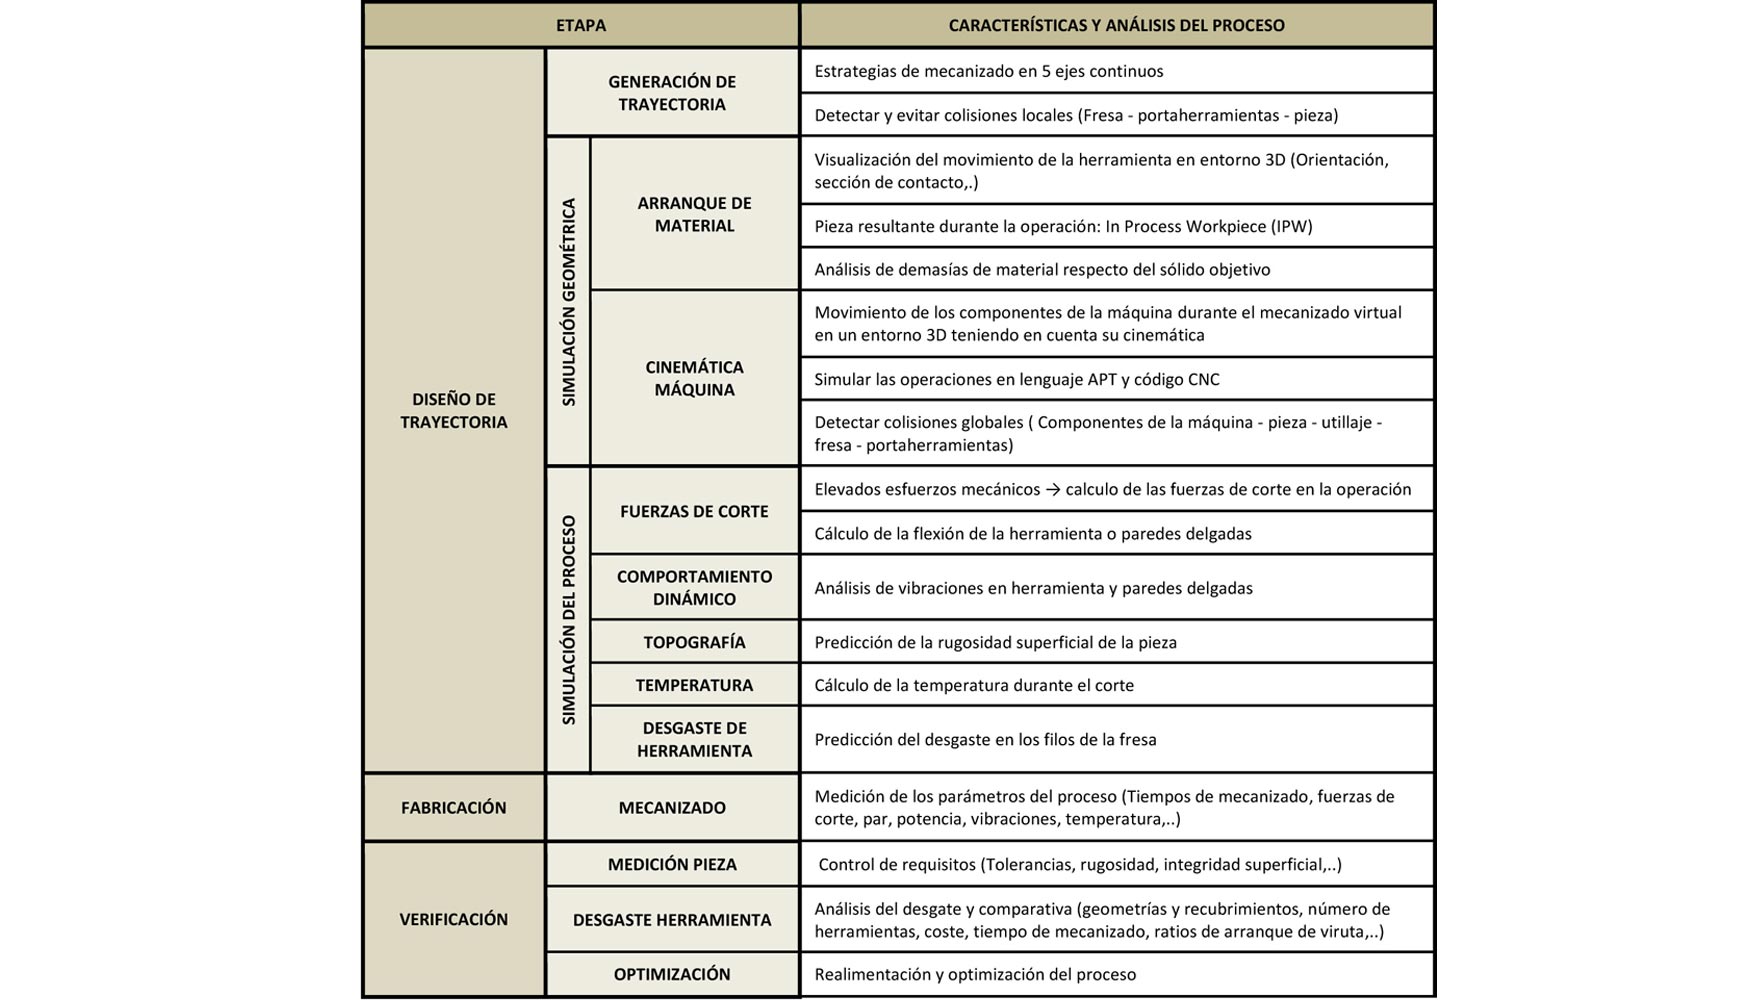 Caractersticas y anlisis relacionados con el proceso de mecanizado en 5 ejes